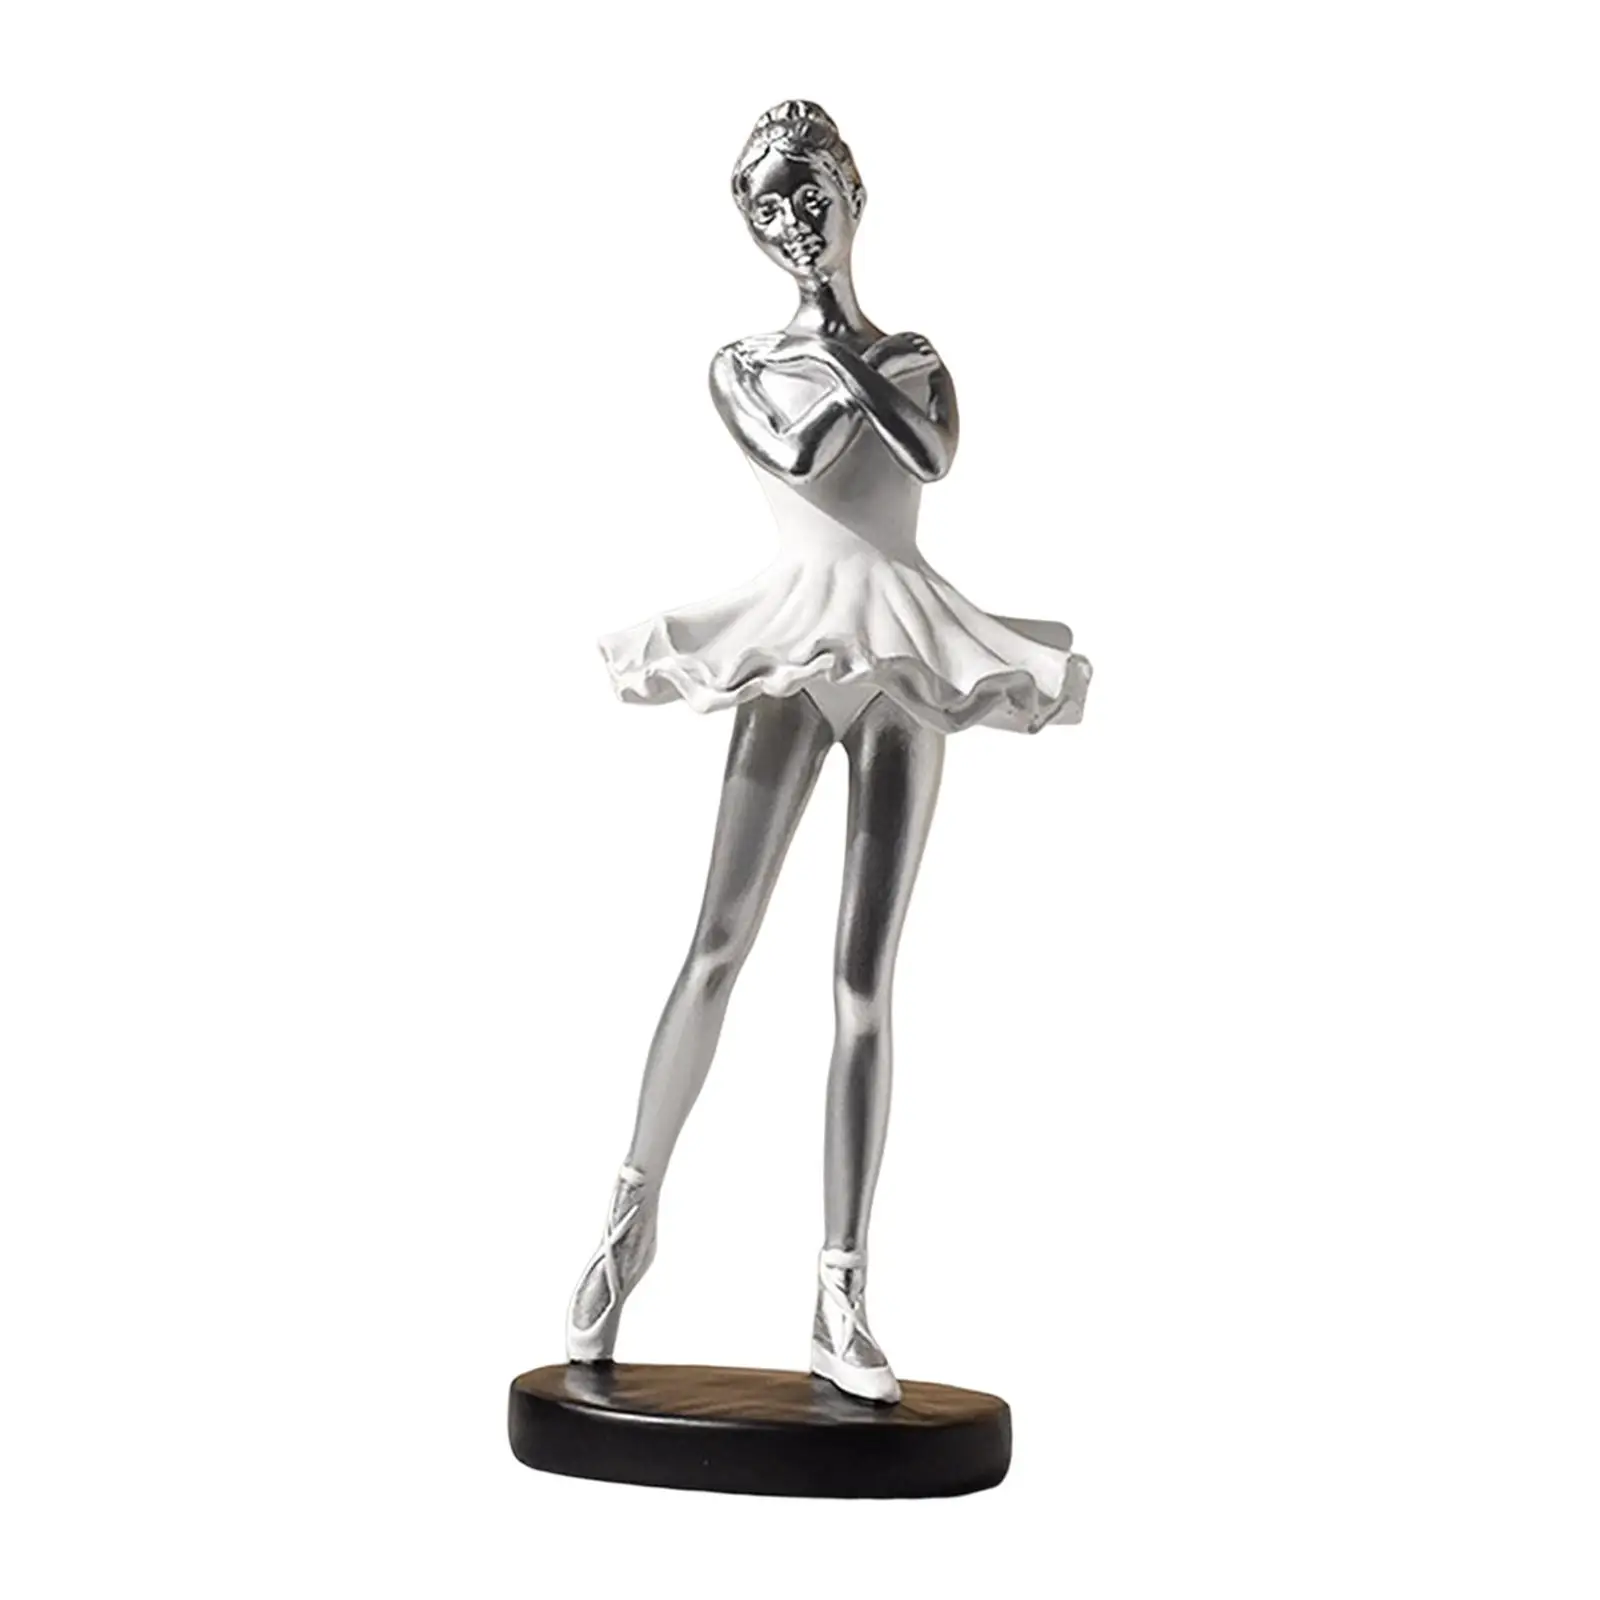 Ballerina Statues Figurines Resin Girl Figure Display  Dancer Sculpture